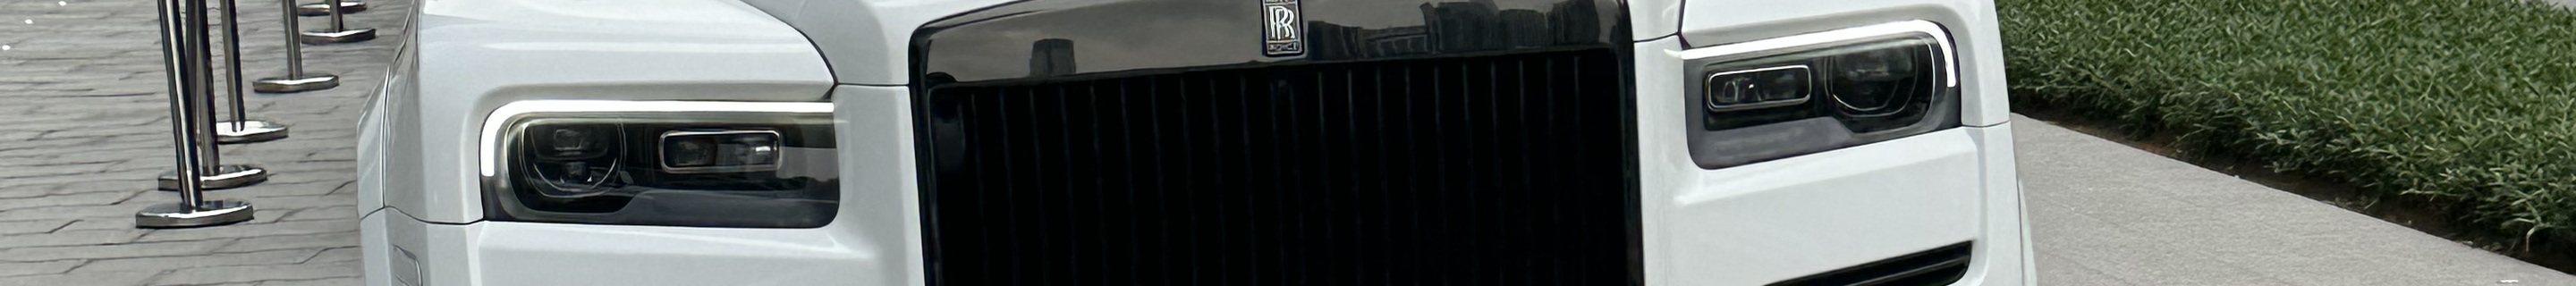 Rolls-Royce Mansory Cullinan Wide Body